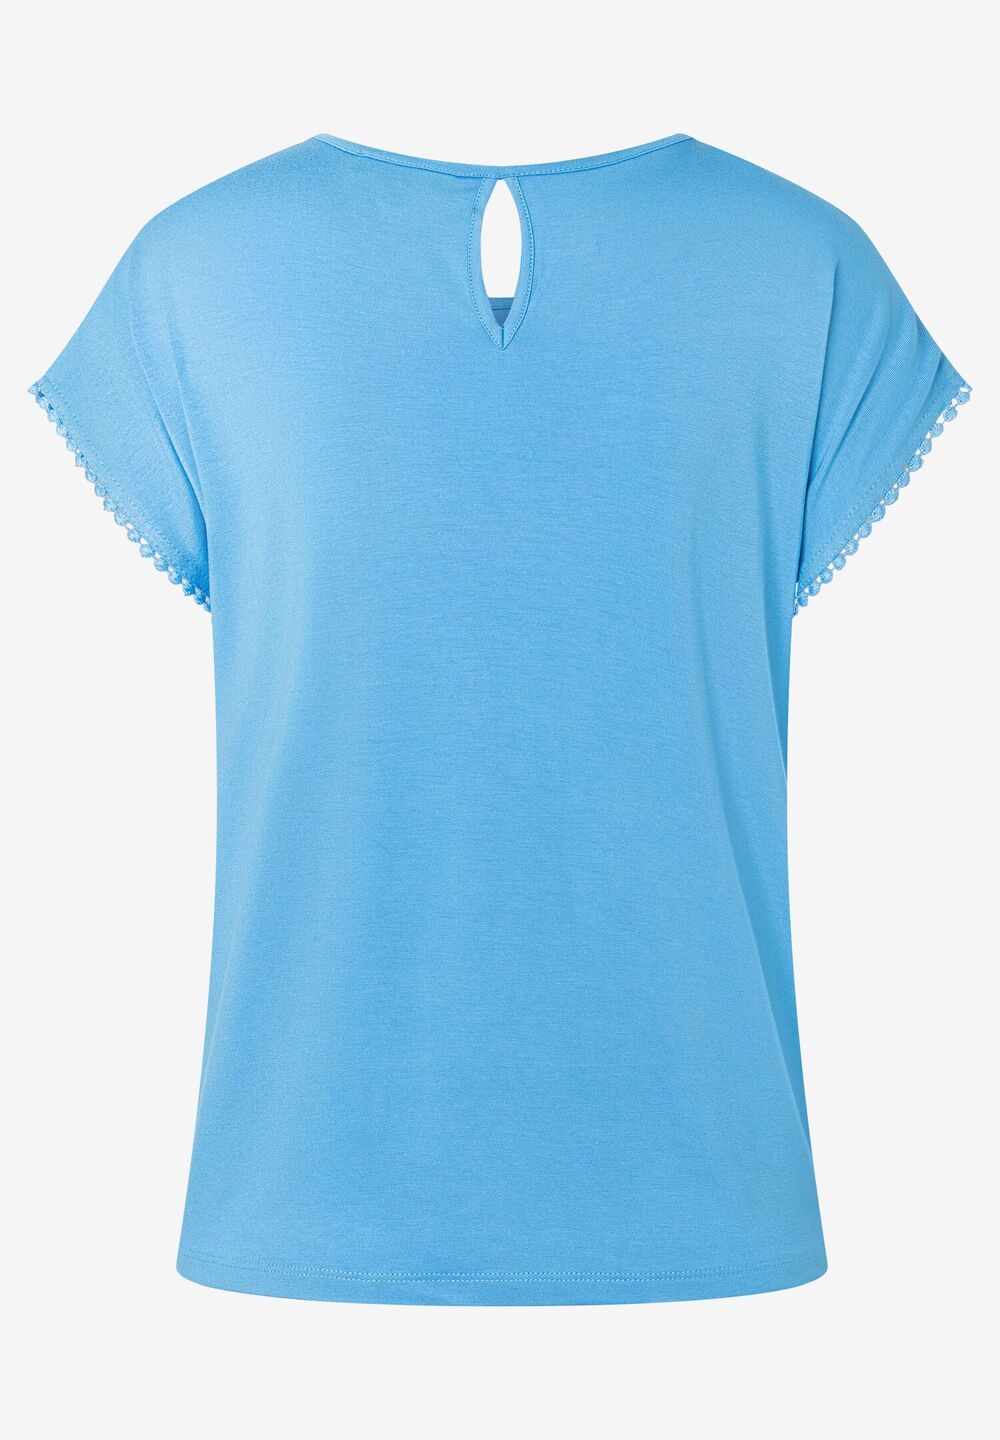 Blusenshirt mit Zierkante, happy blue, Sommer-Kollektion, blauRückansicht